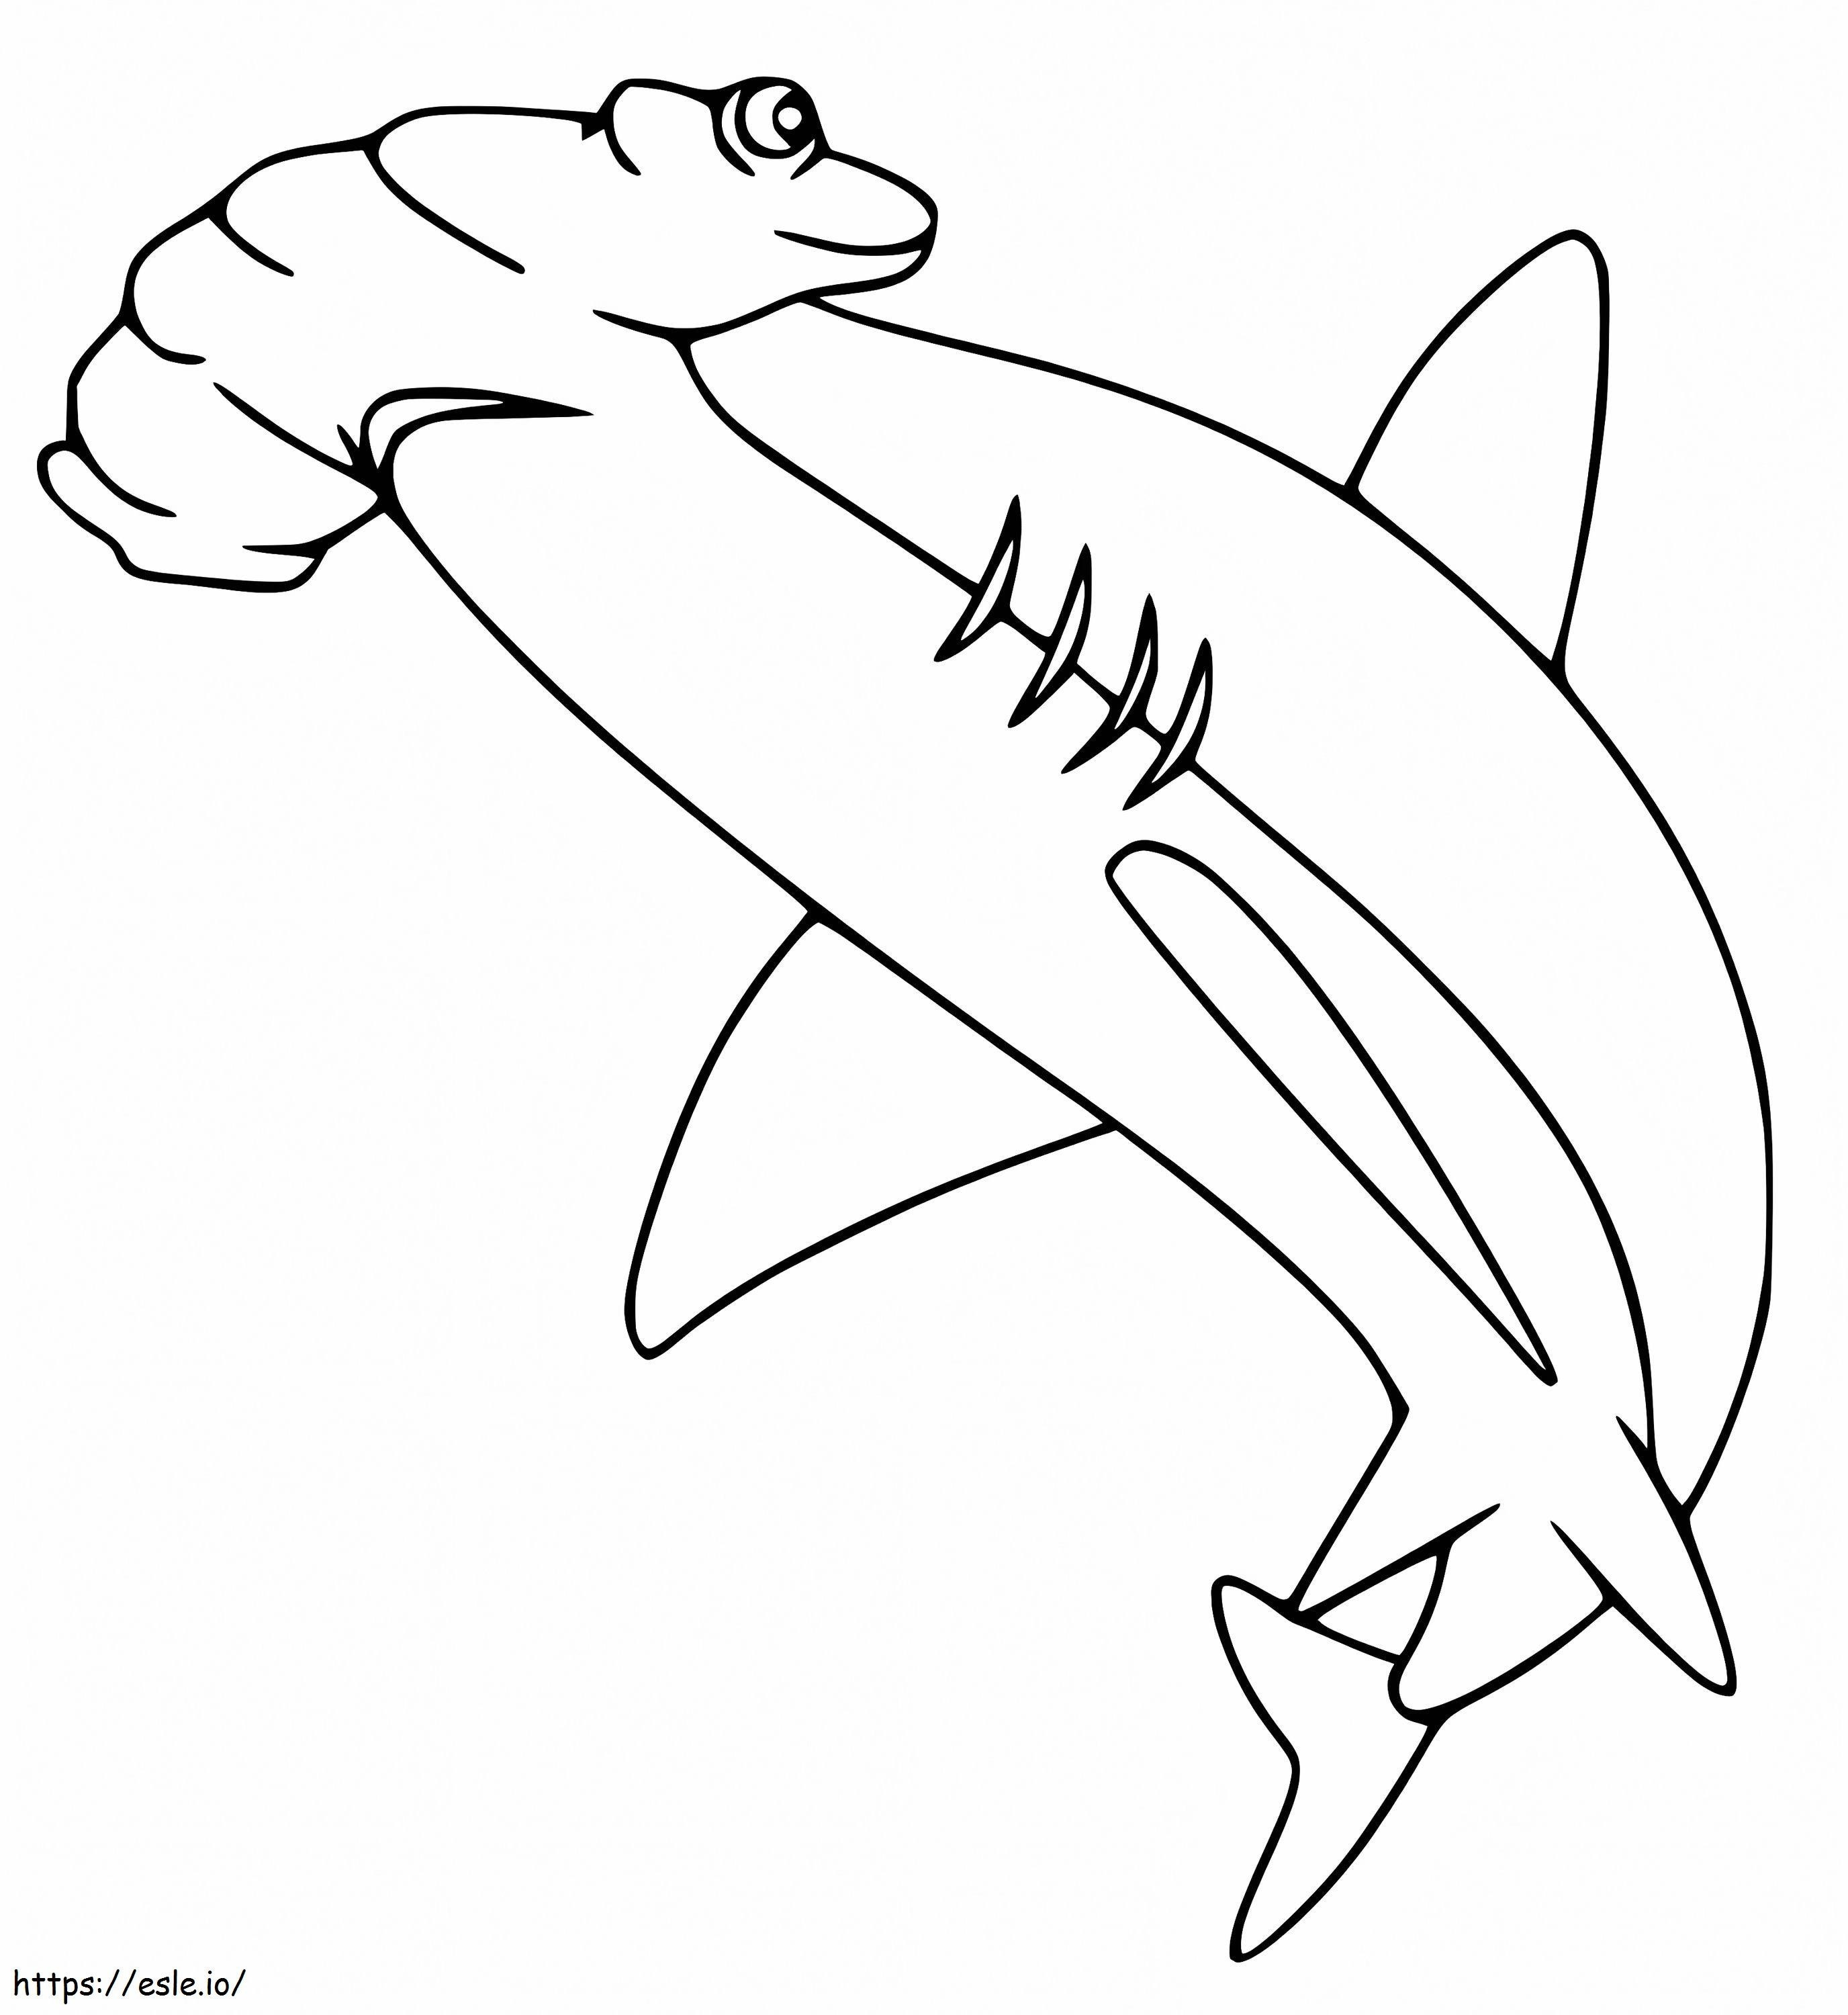 Tiburón martillo 5 para colorear